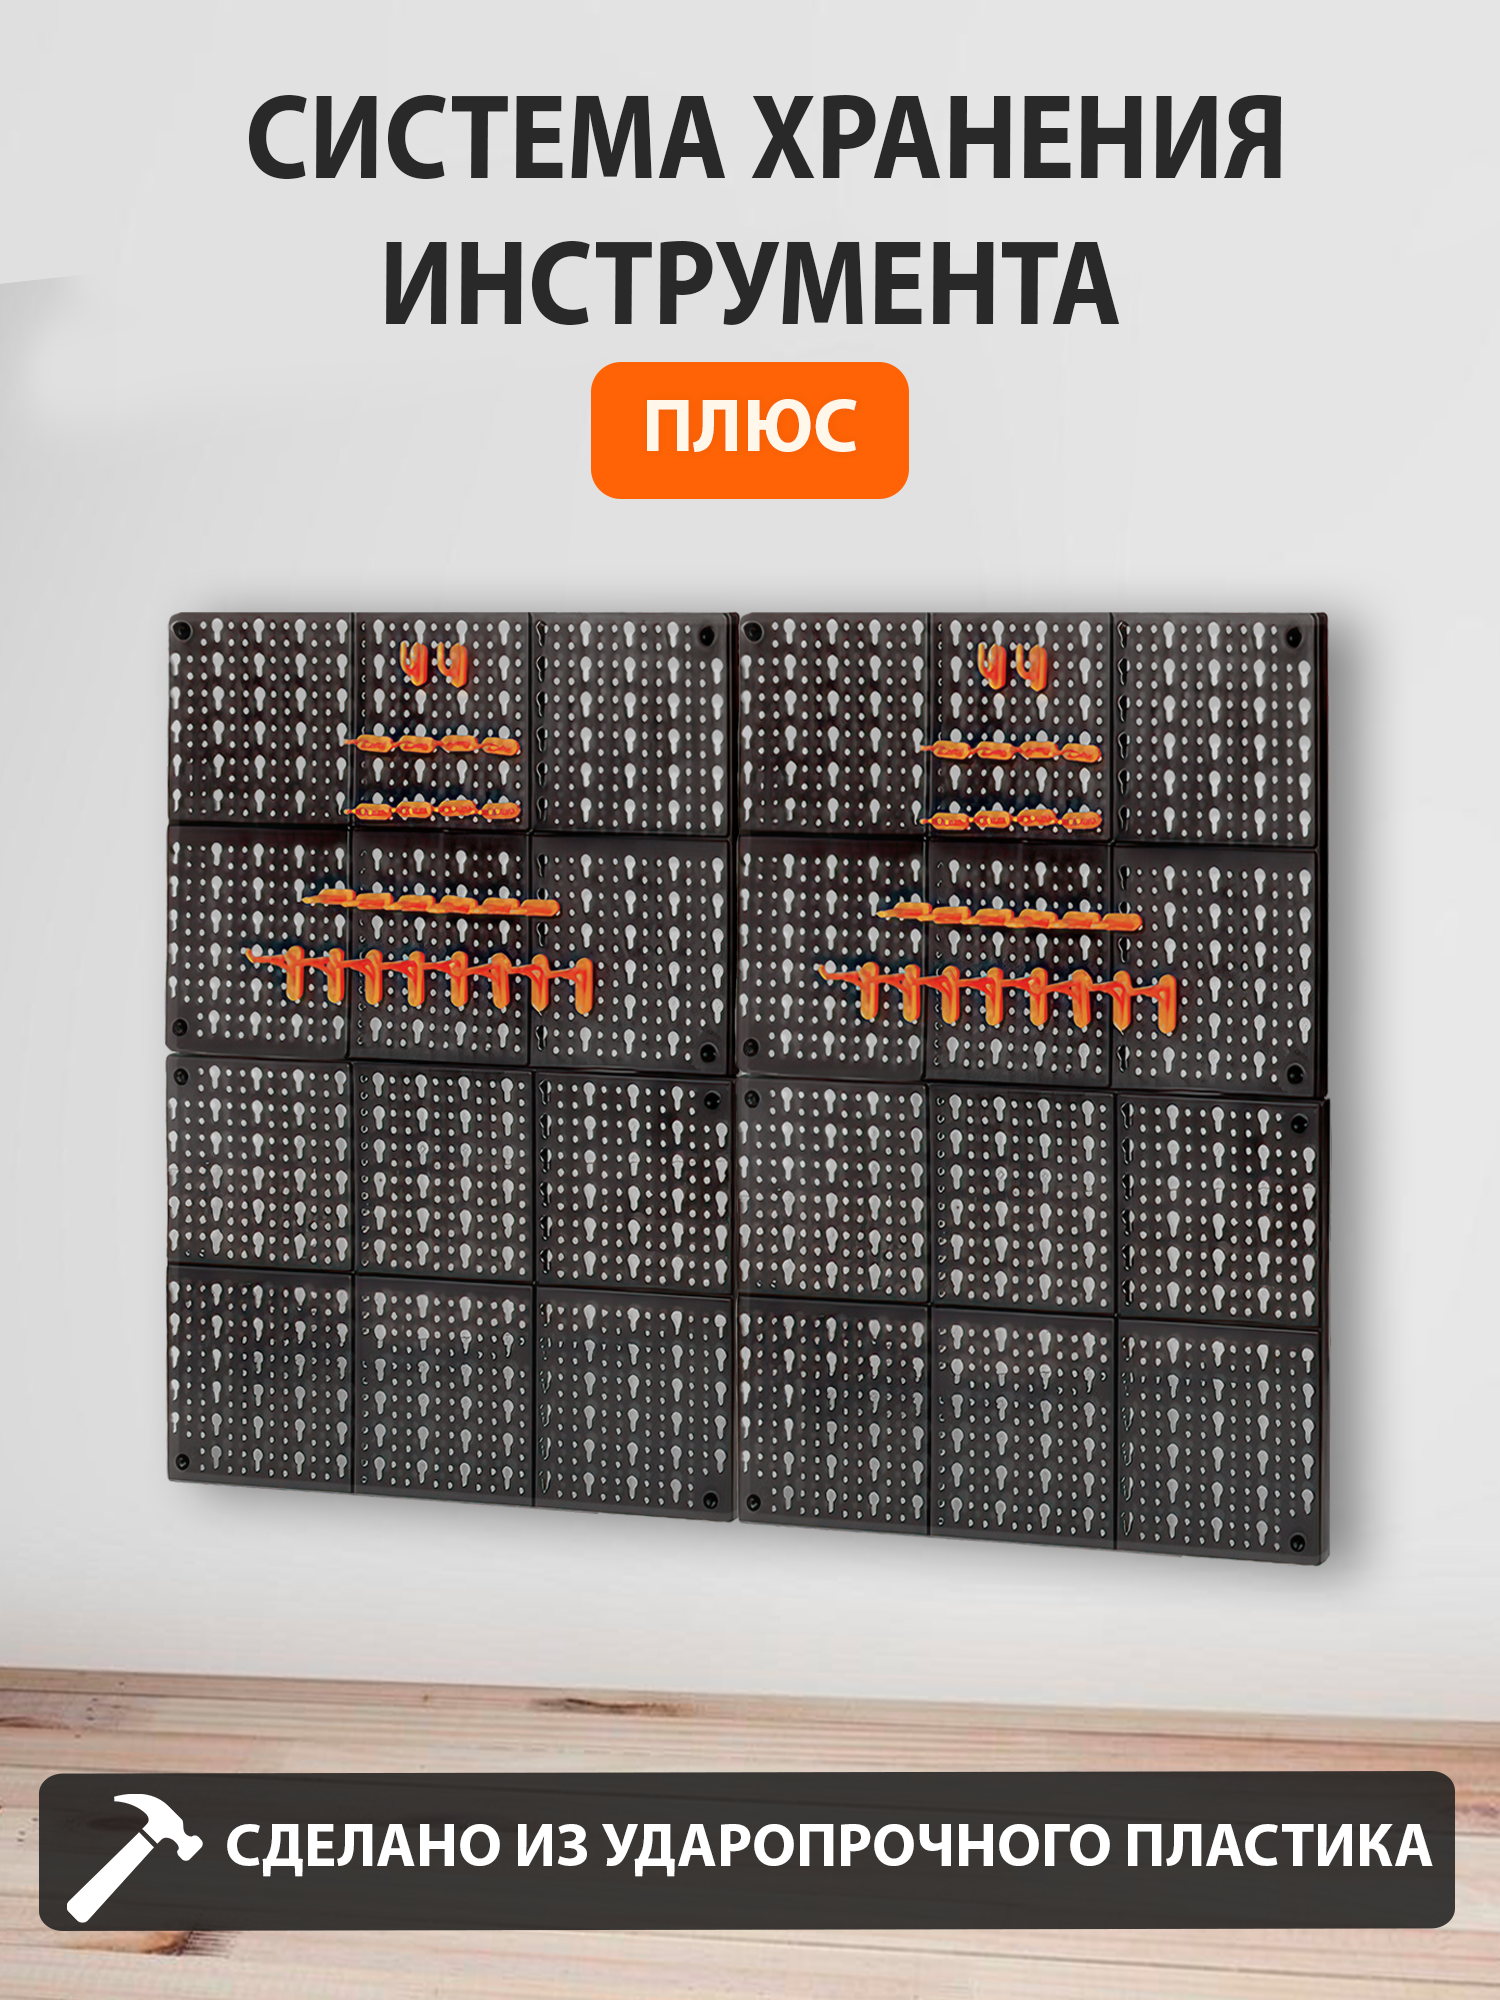 Система хранения инструмента. Плюс. — купить в интернет-магазине по низкой цене на Яндекс Маркете